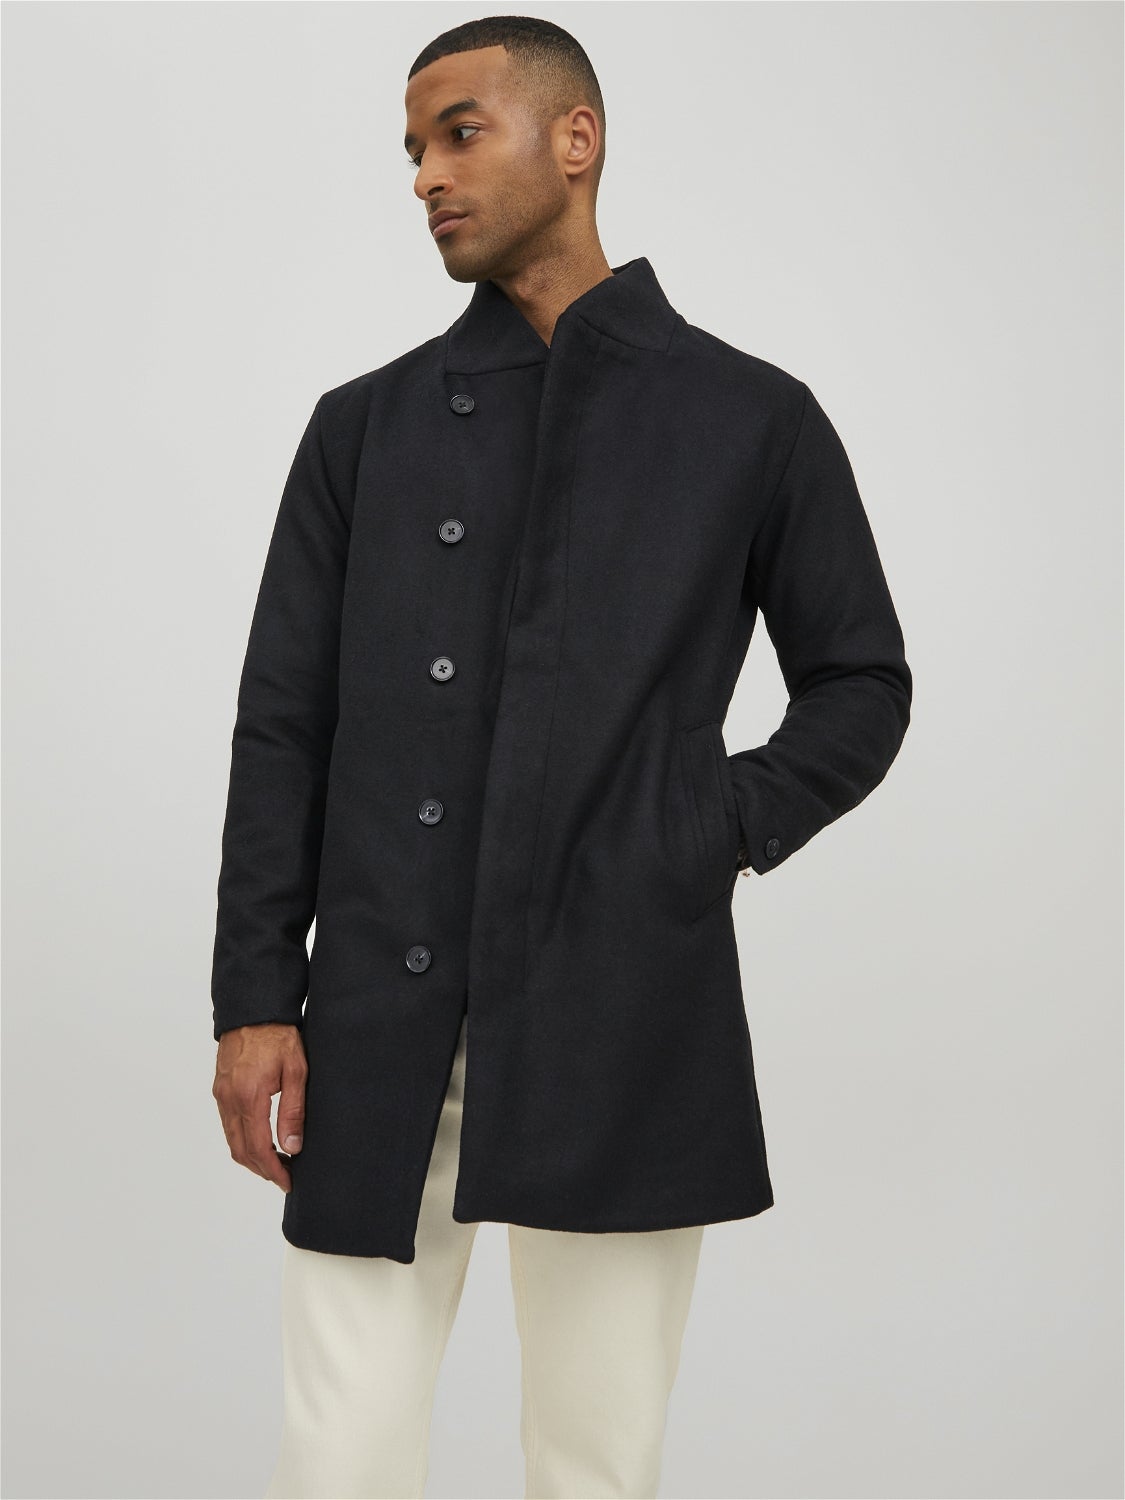 Mededogen Poort Locomotief High neck wool Coat with 50% discount! | Jack & Jones®